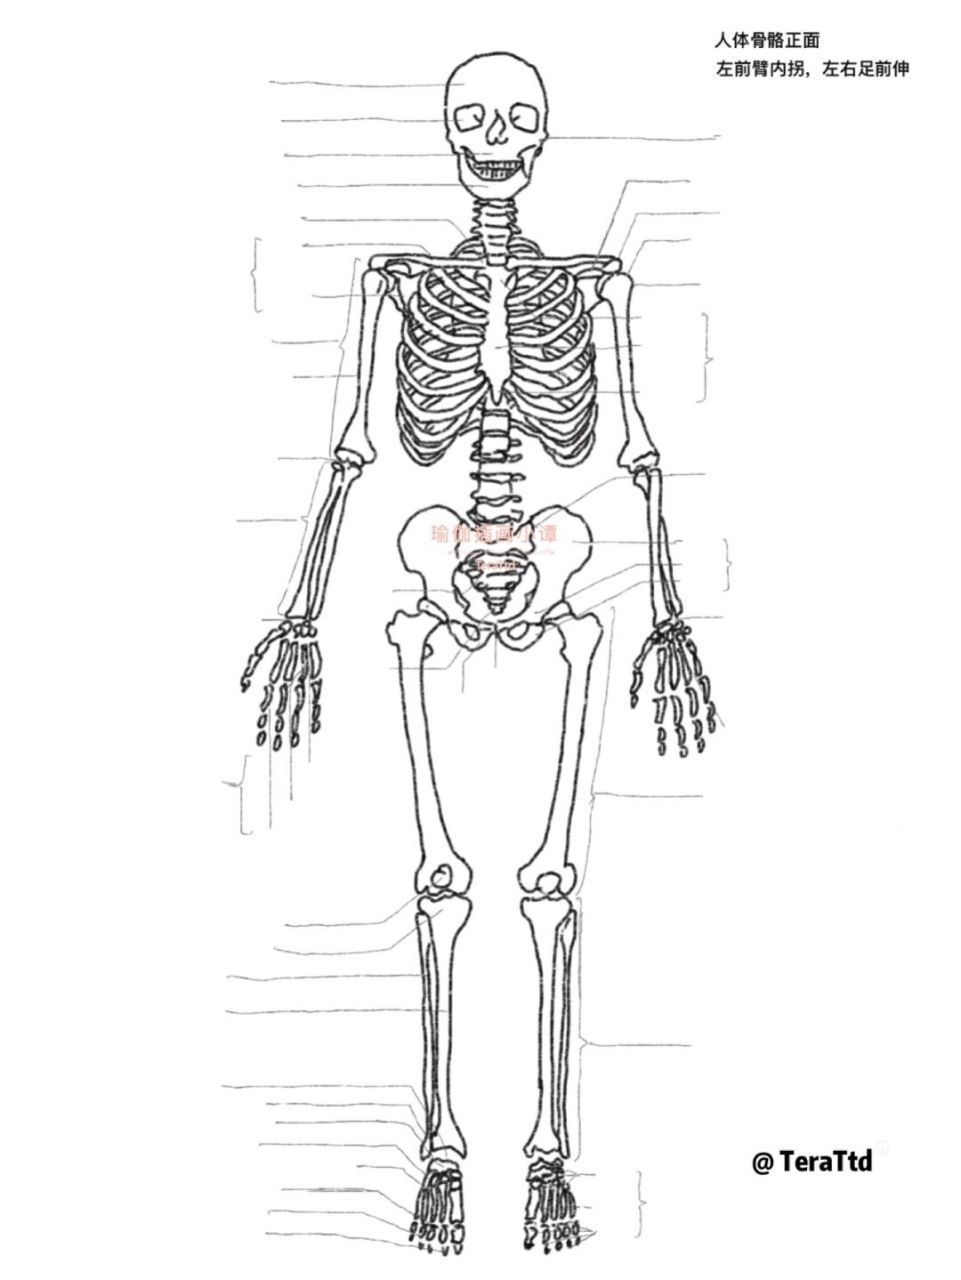 假医学生笔记99697115默写版解剖人体骨骼线稿 假医学生笔记